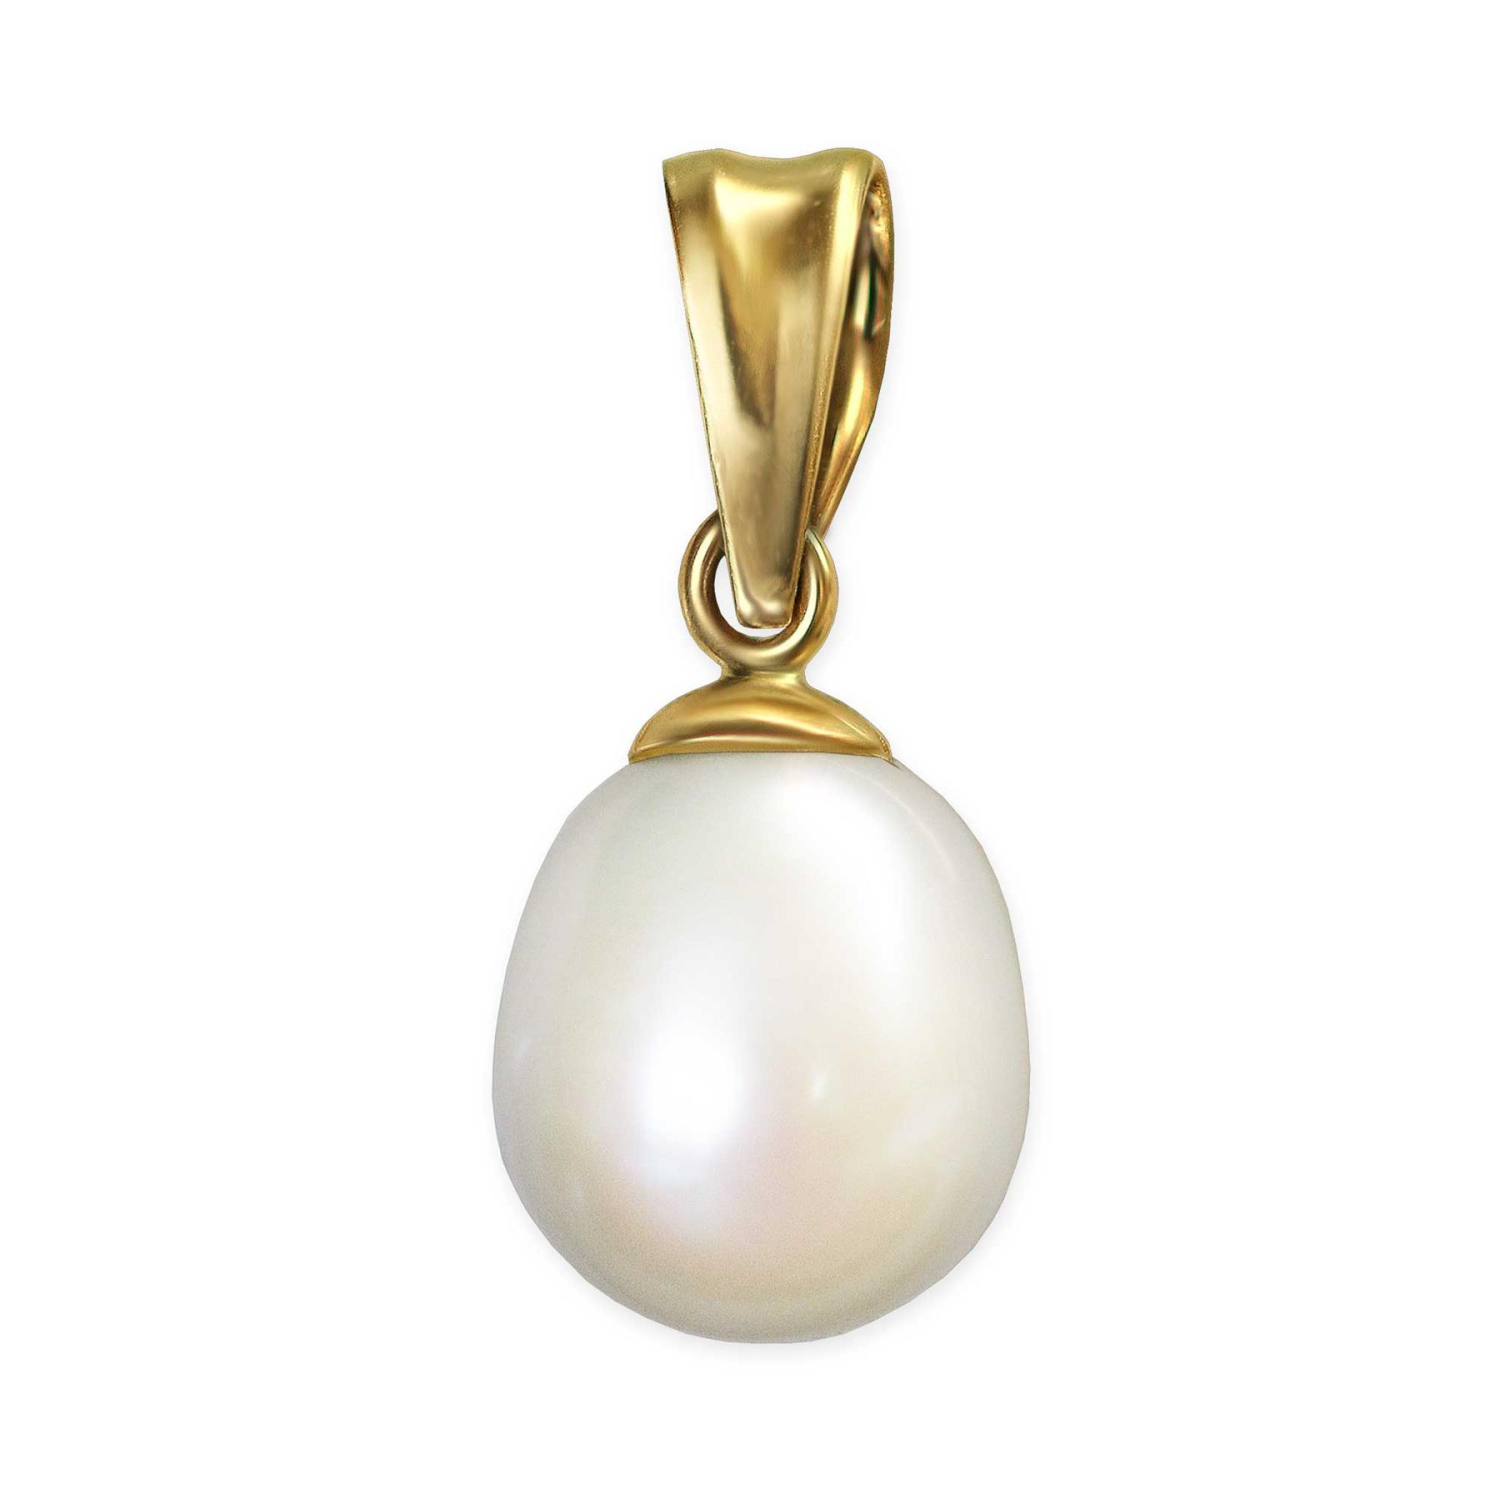 Goldener kleiner Perlenanhänger mit Süßwasserperle oval 8 mm glänzend 333 GOLD 8 KARAT